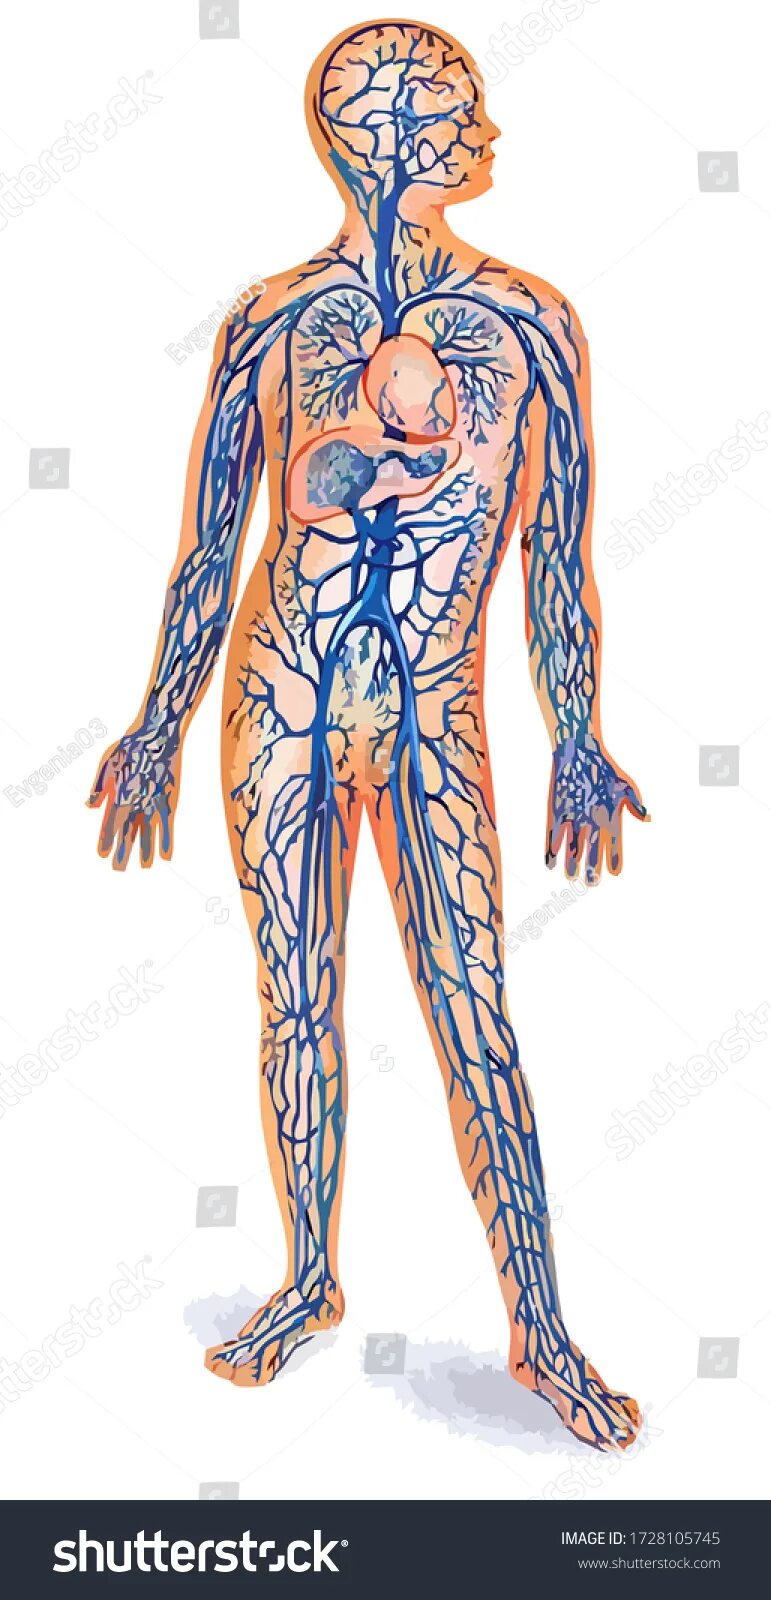 Самая большая вена как называется у человека. Венозная система человека анатомия. Венозная система человека анатомия схема. Артериальная система кровообращения. Вены большого круга кровообращения анатомия.